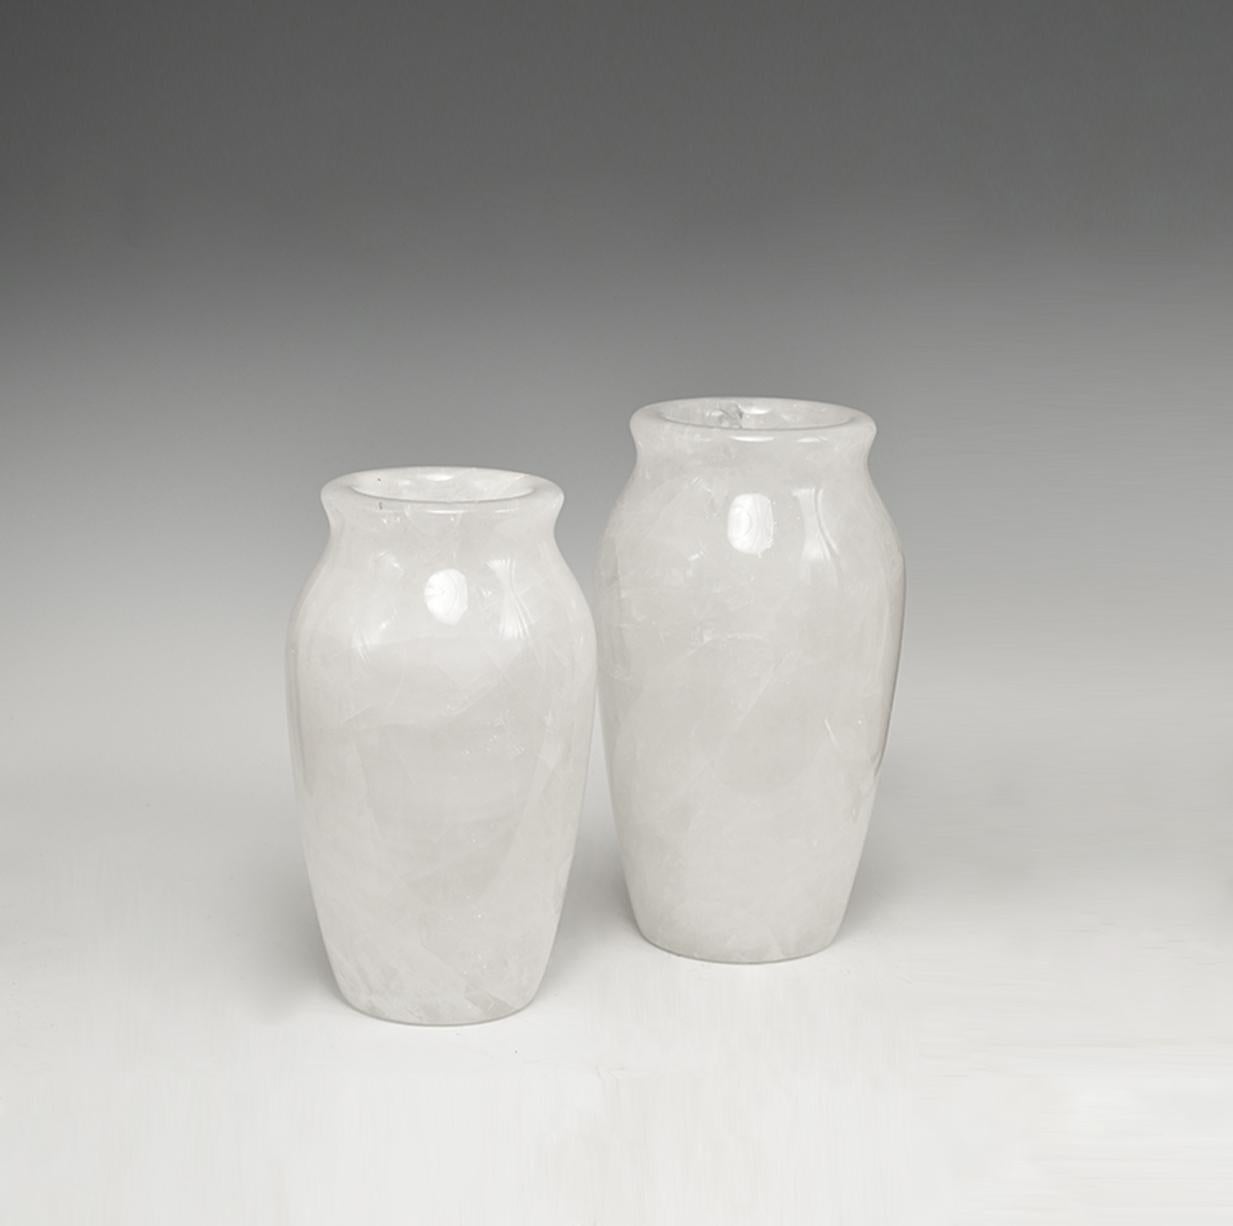 Fine carved rock crystal quartz vases. 
Large: 12